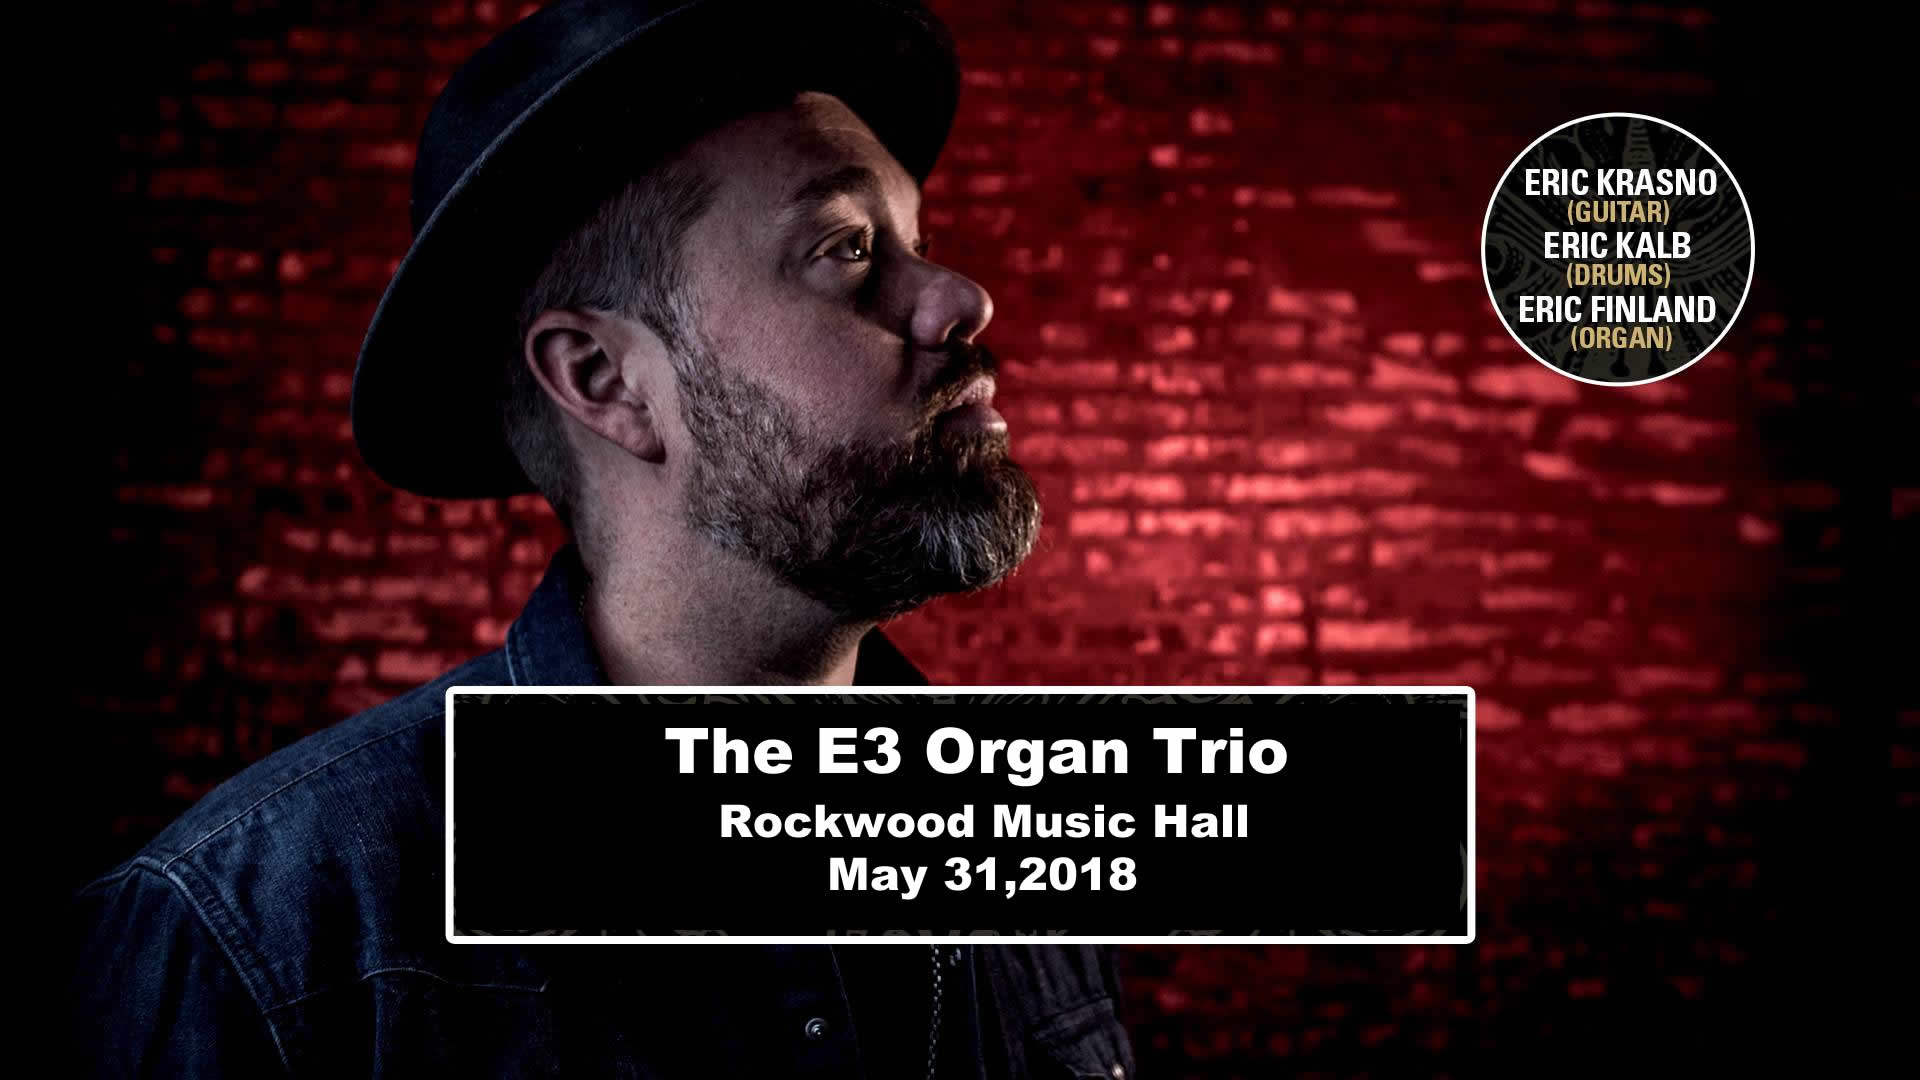 Live Stream of Eric Krasno’s E3 Organ Trio Debut